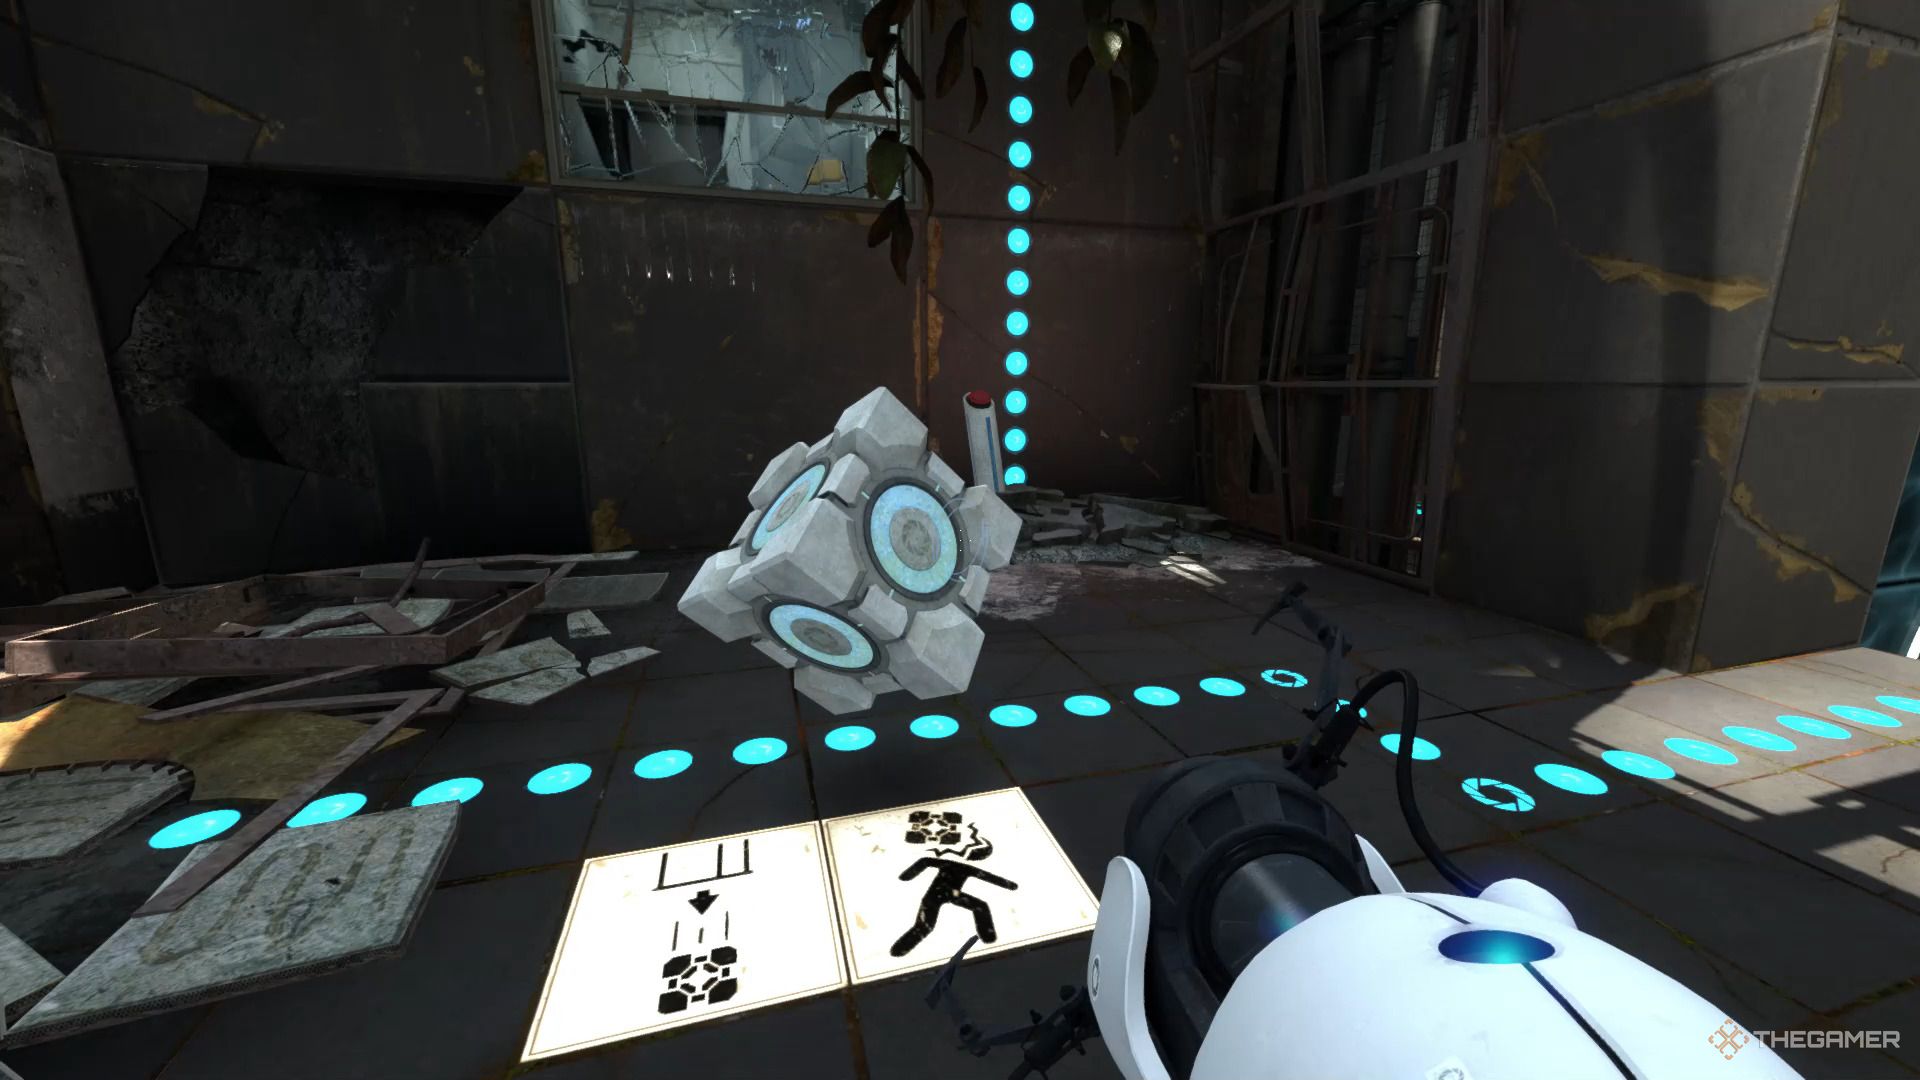 Ein Screenshot von Portal Revolution, der zeigt, wie ein Würfel landet, nachdem er aus einem Spender gefallen ist